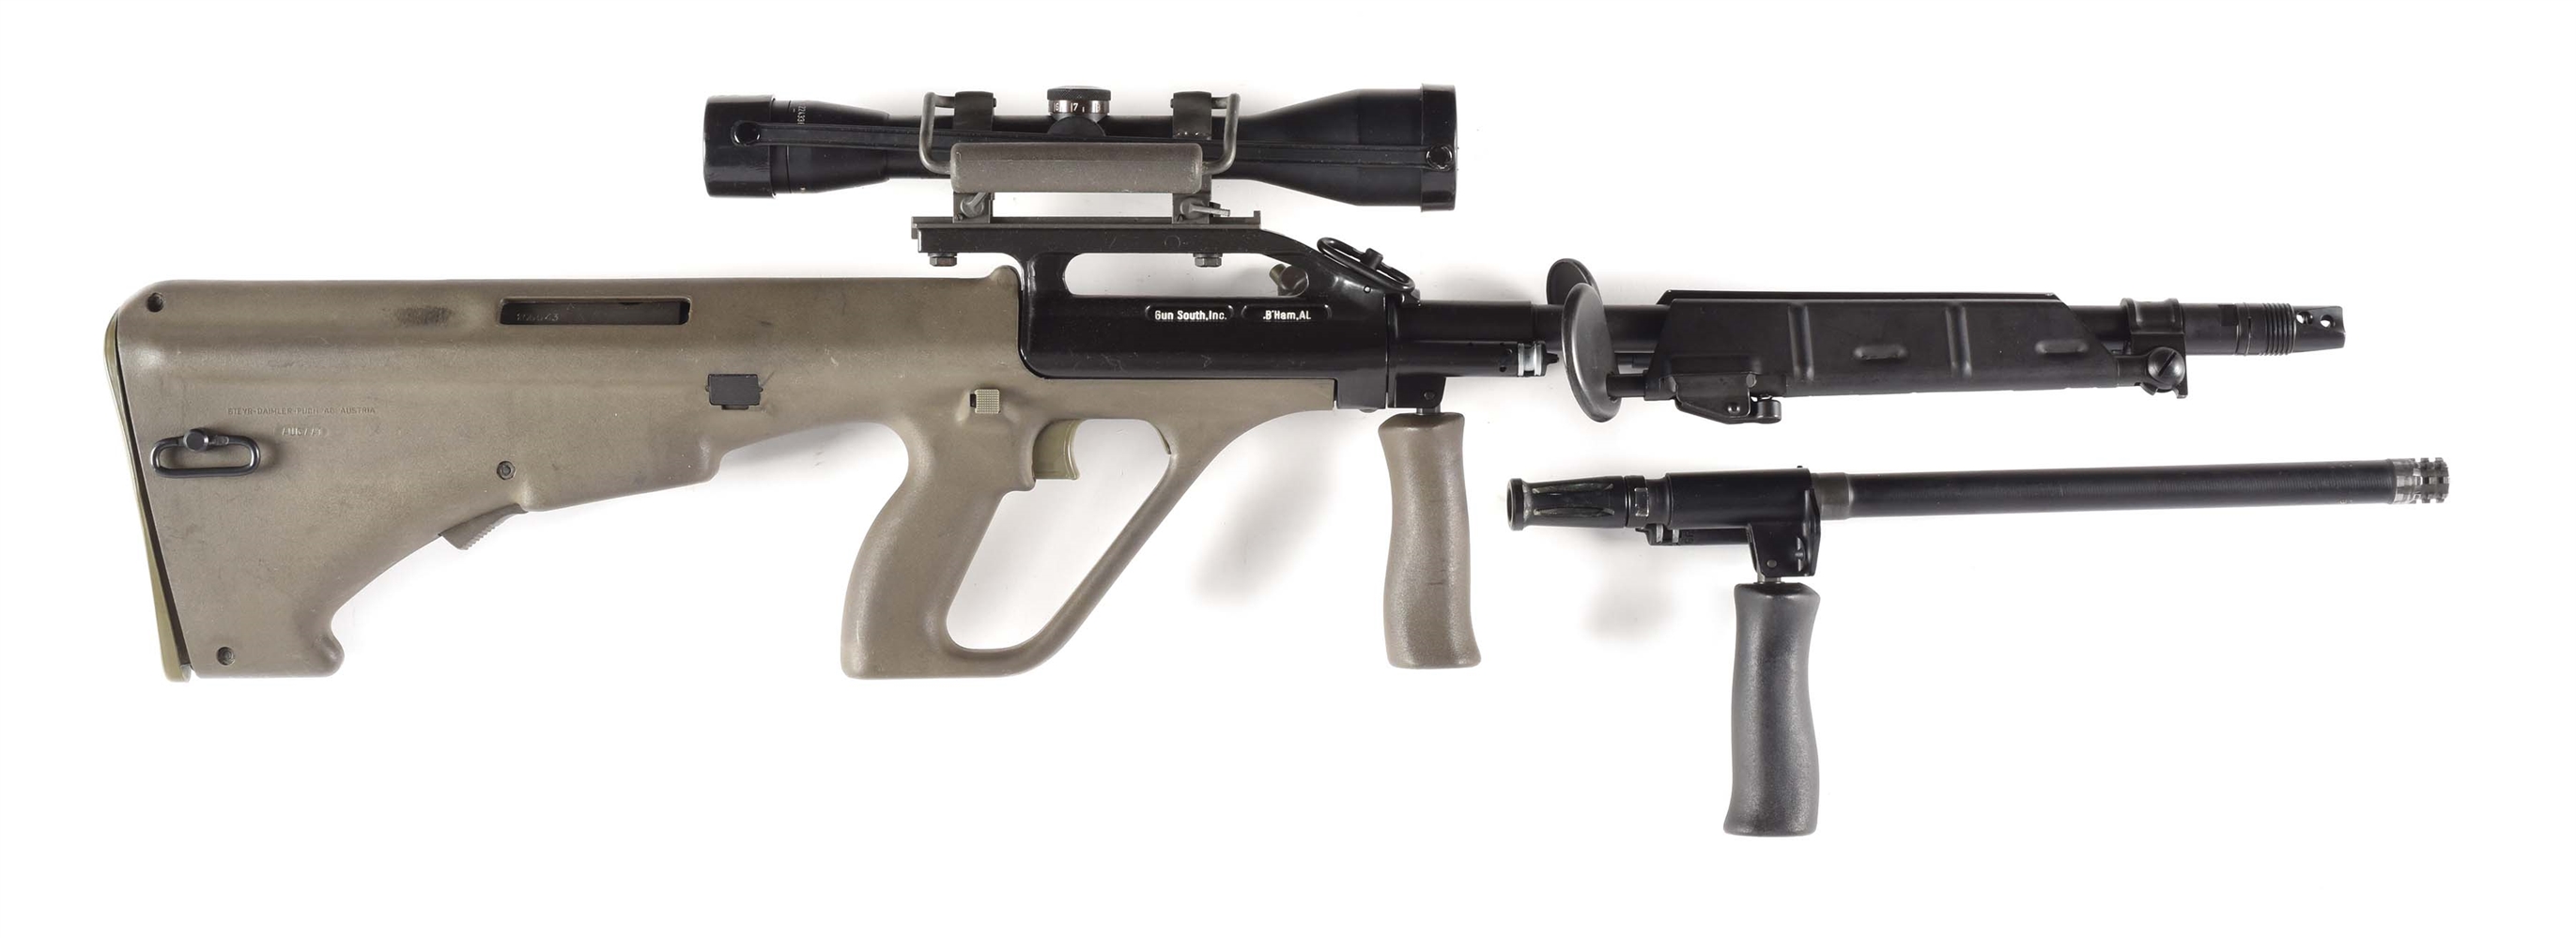 (N) STEYR AUG/A1 HEAVY BARREL MACHINE GUN (PRE-86 DEALER SAMPLE).